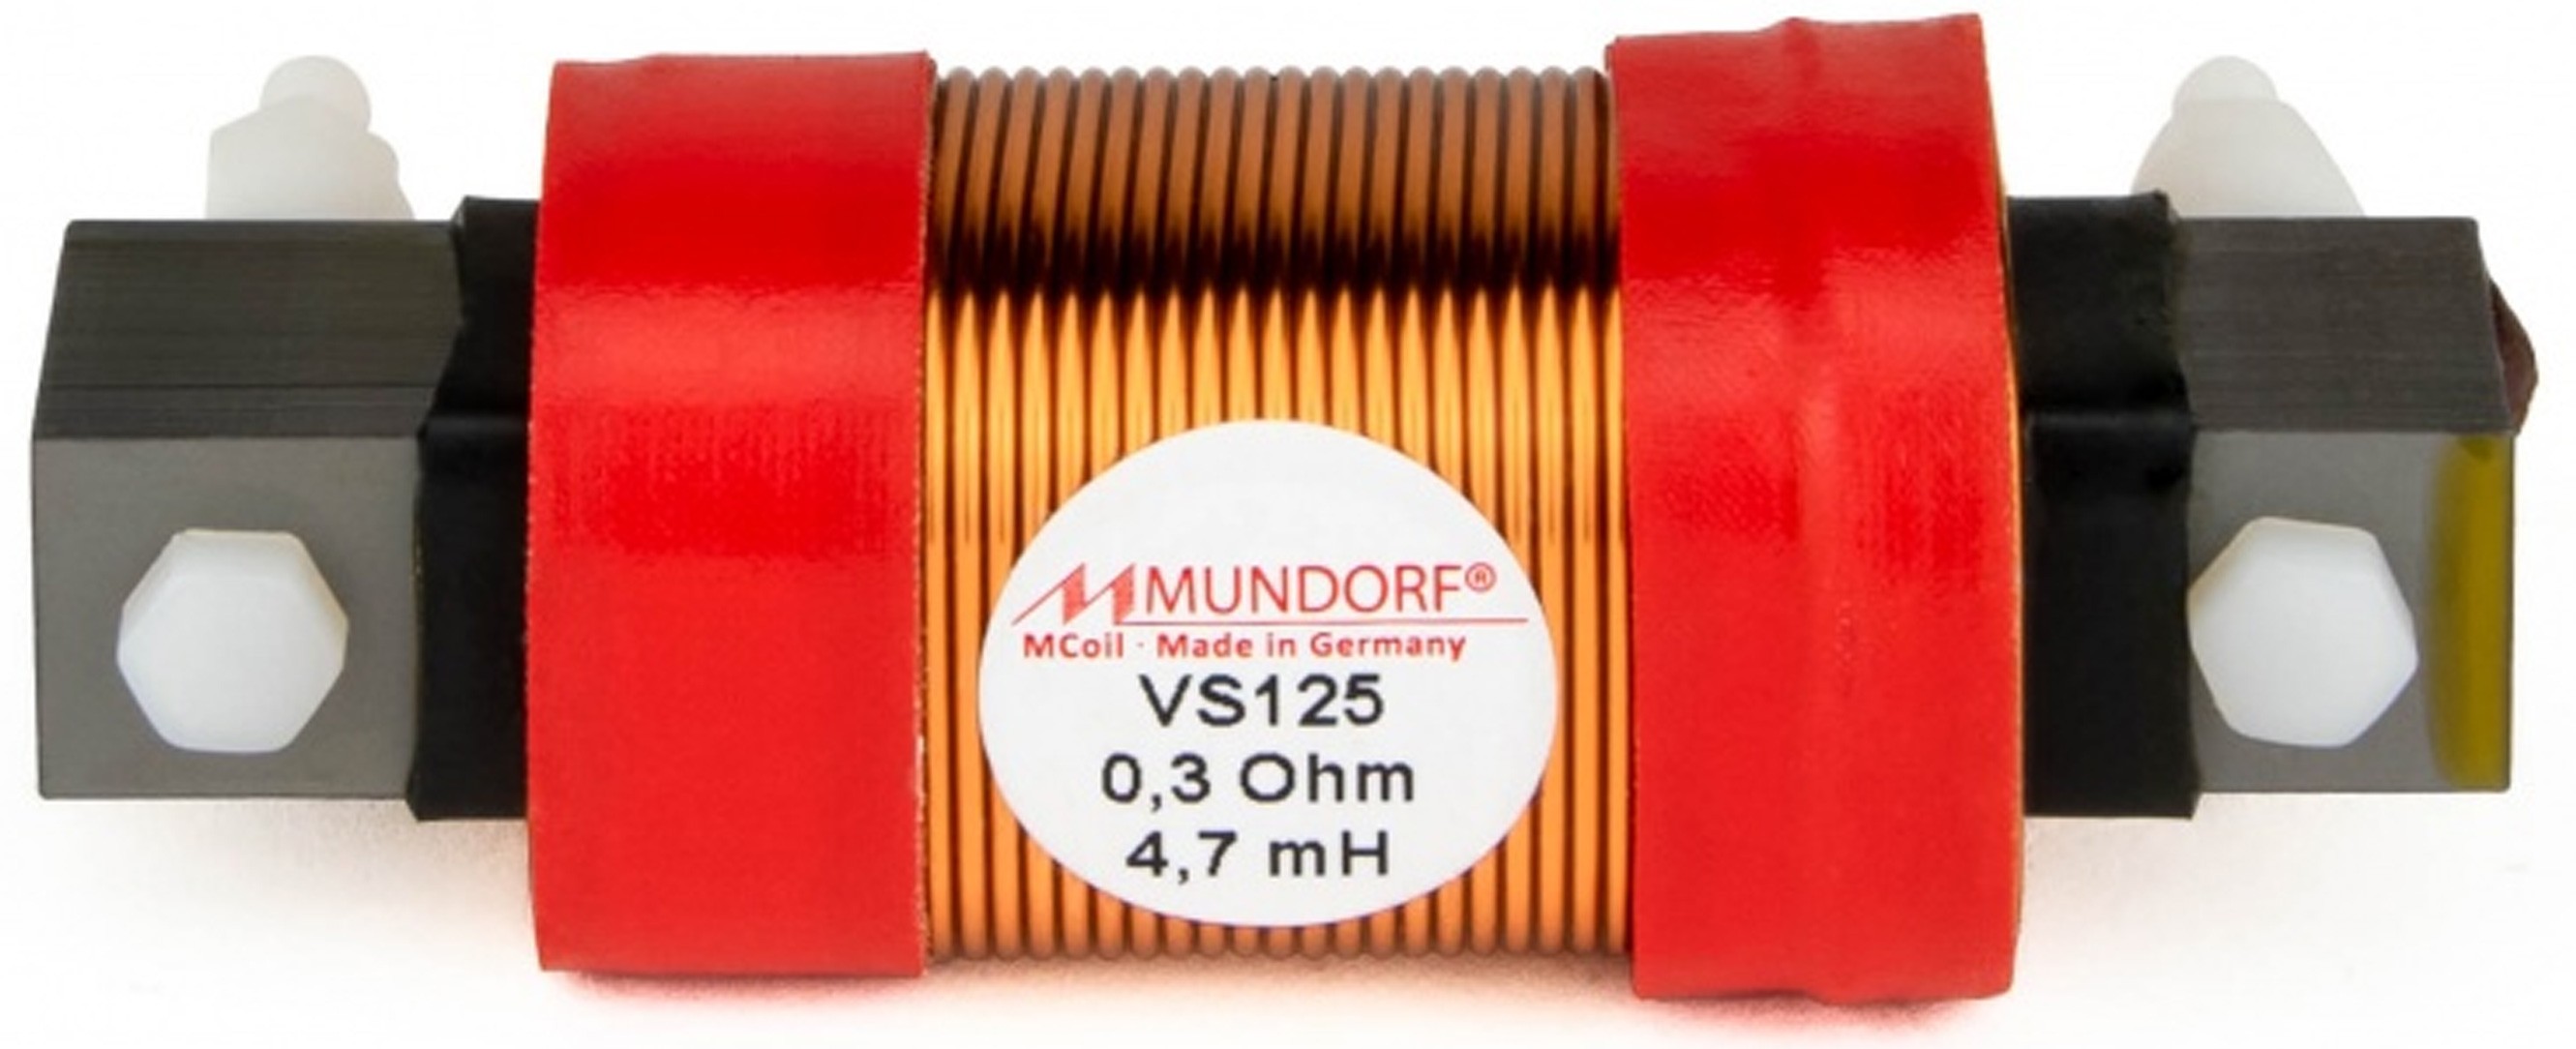 MUNDORF VS125-6.8 MCOIL ICORE Copper Coil Feron Core 6.8mH